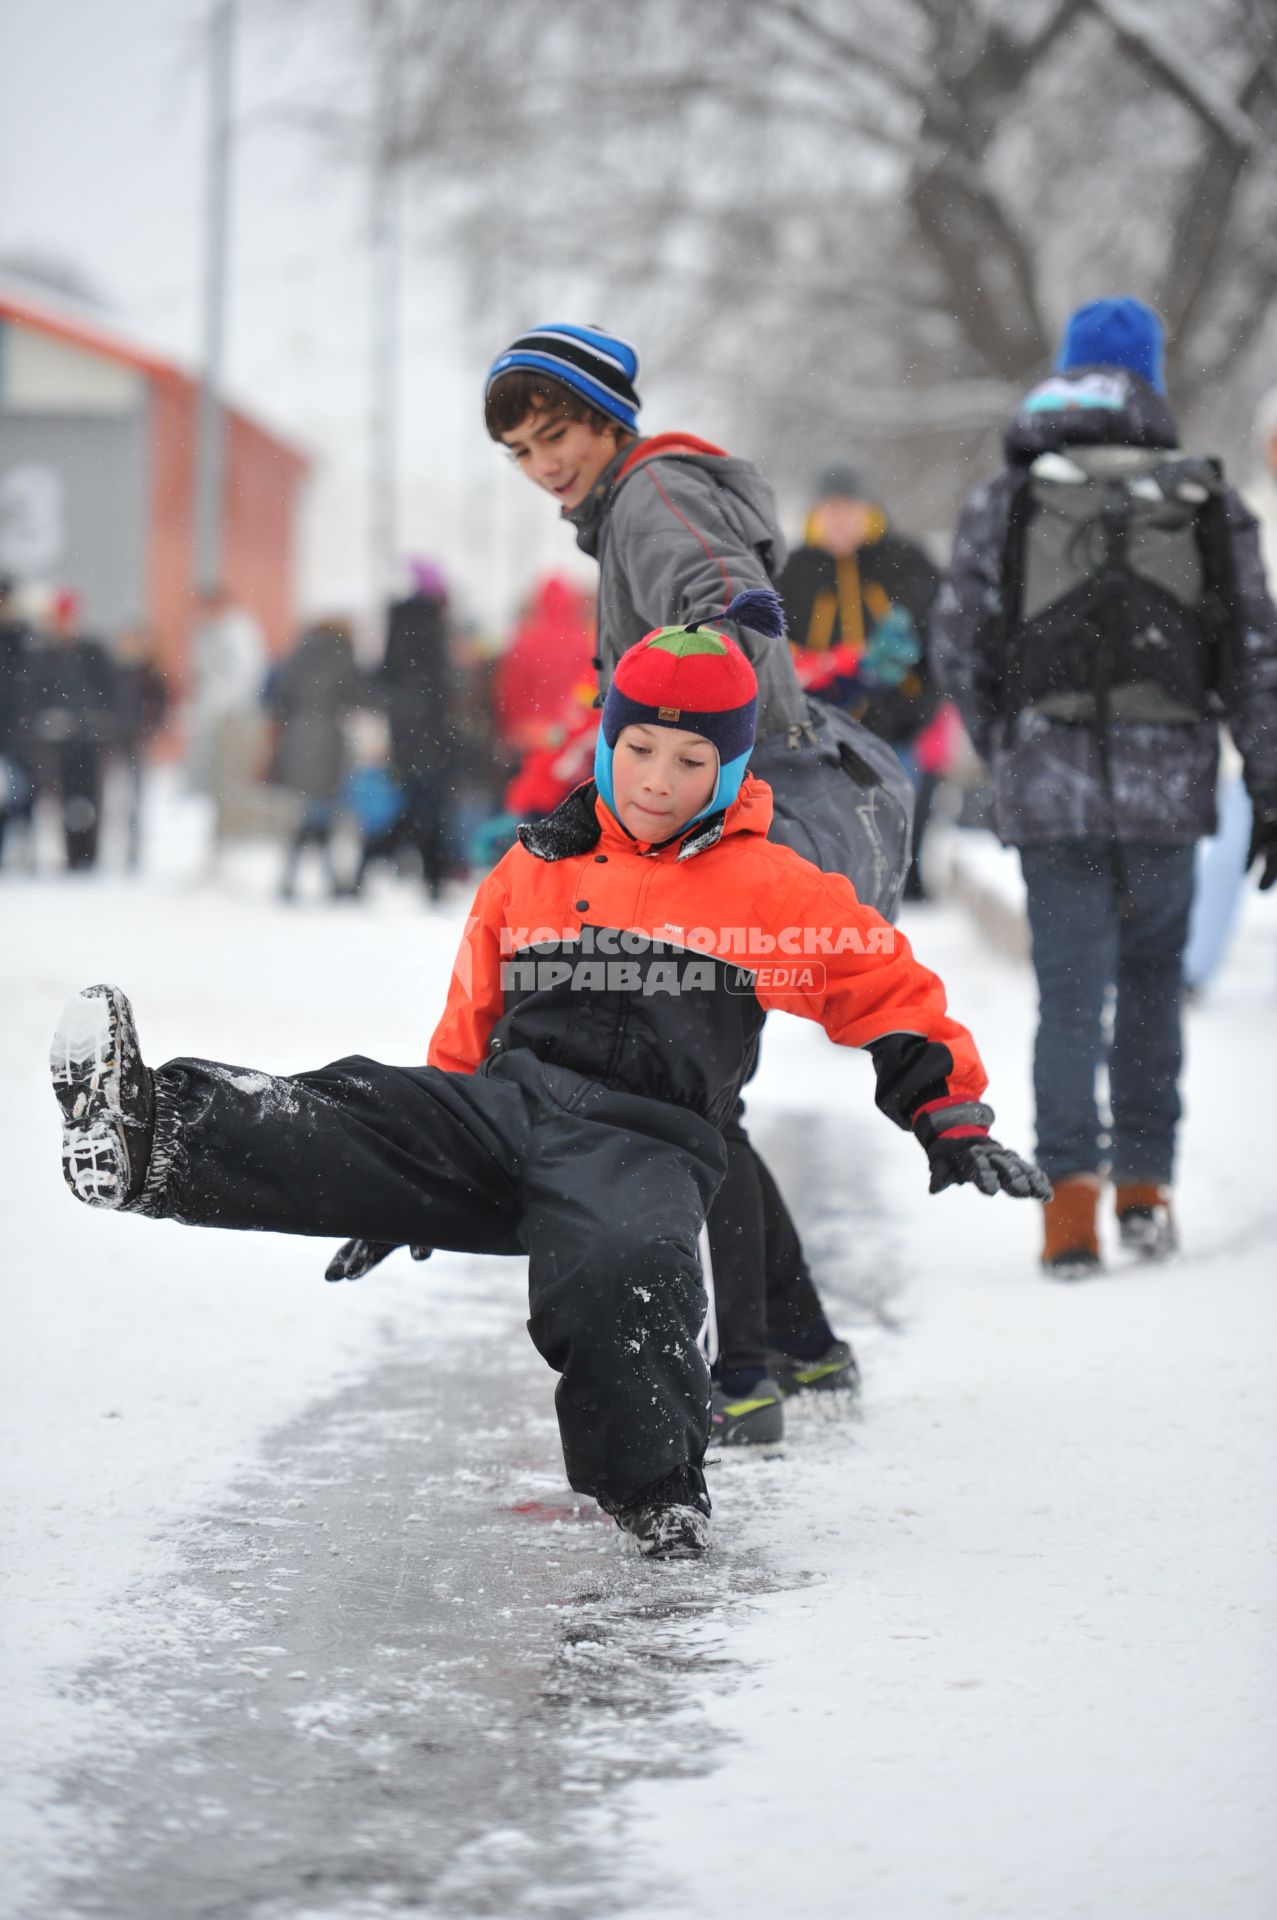 Снег в Москве. Парк Горького. На снимке: мальчик скользит по ледяной дорожке.